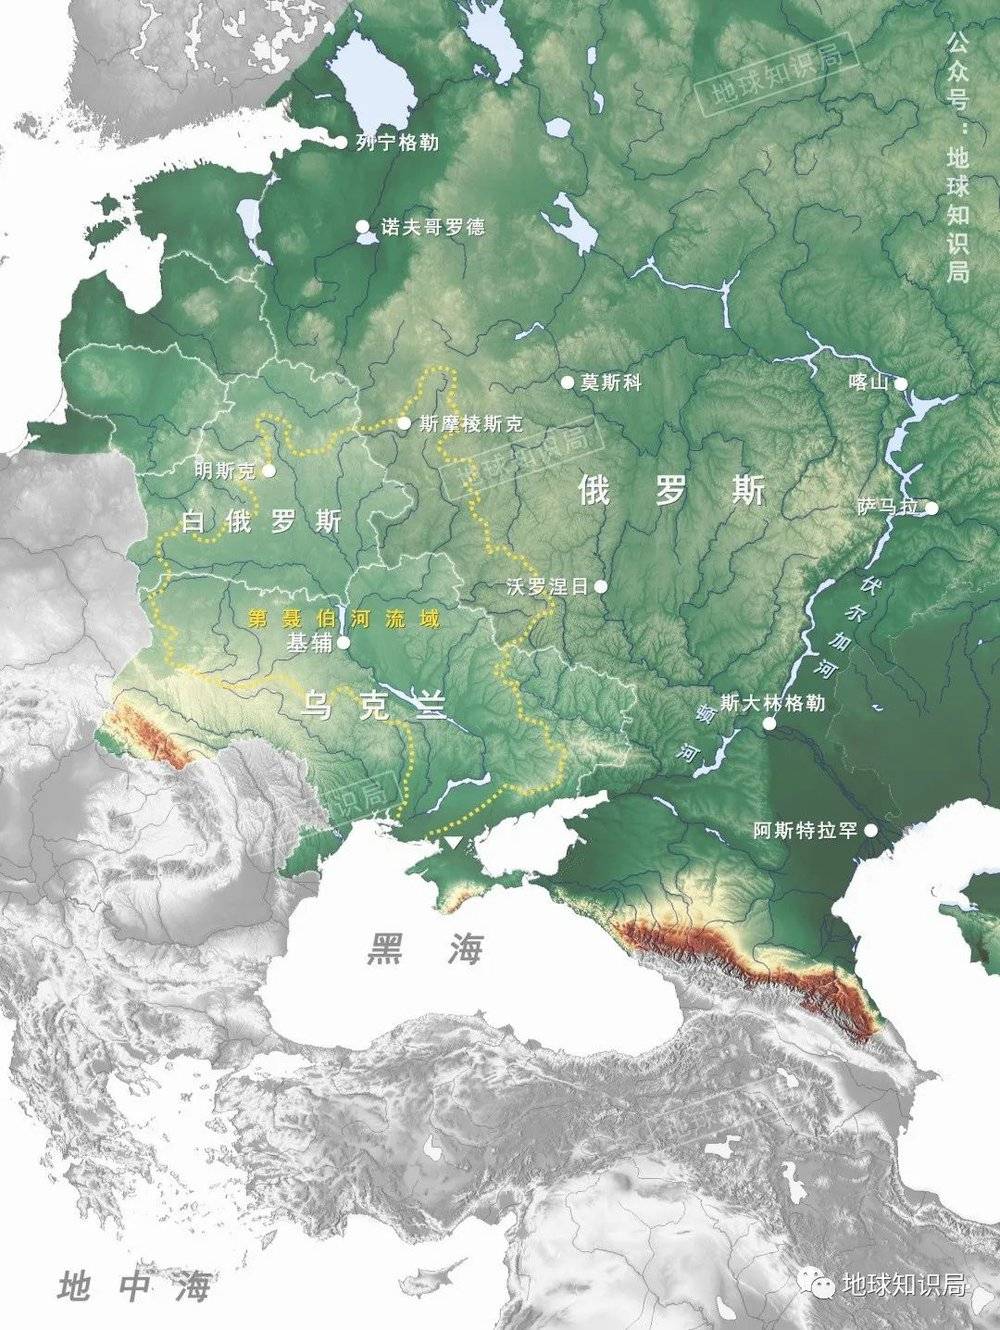 东欧平原，自古至今都是东斯拉夫历史的主舞台，是地理和历史共同决定的产物，几乎不容改变